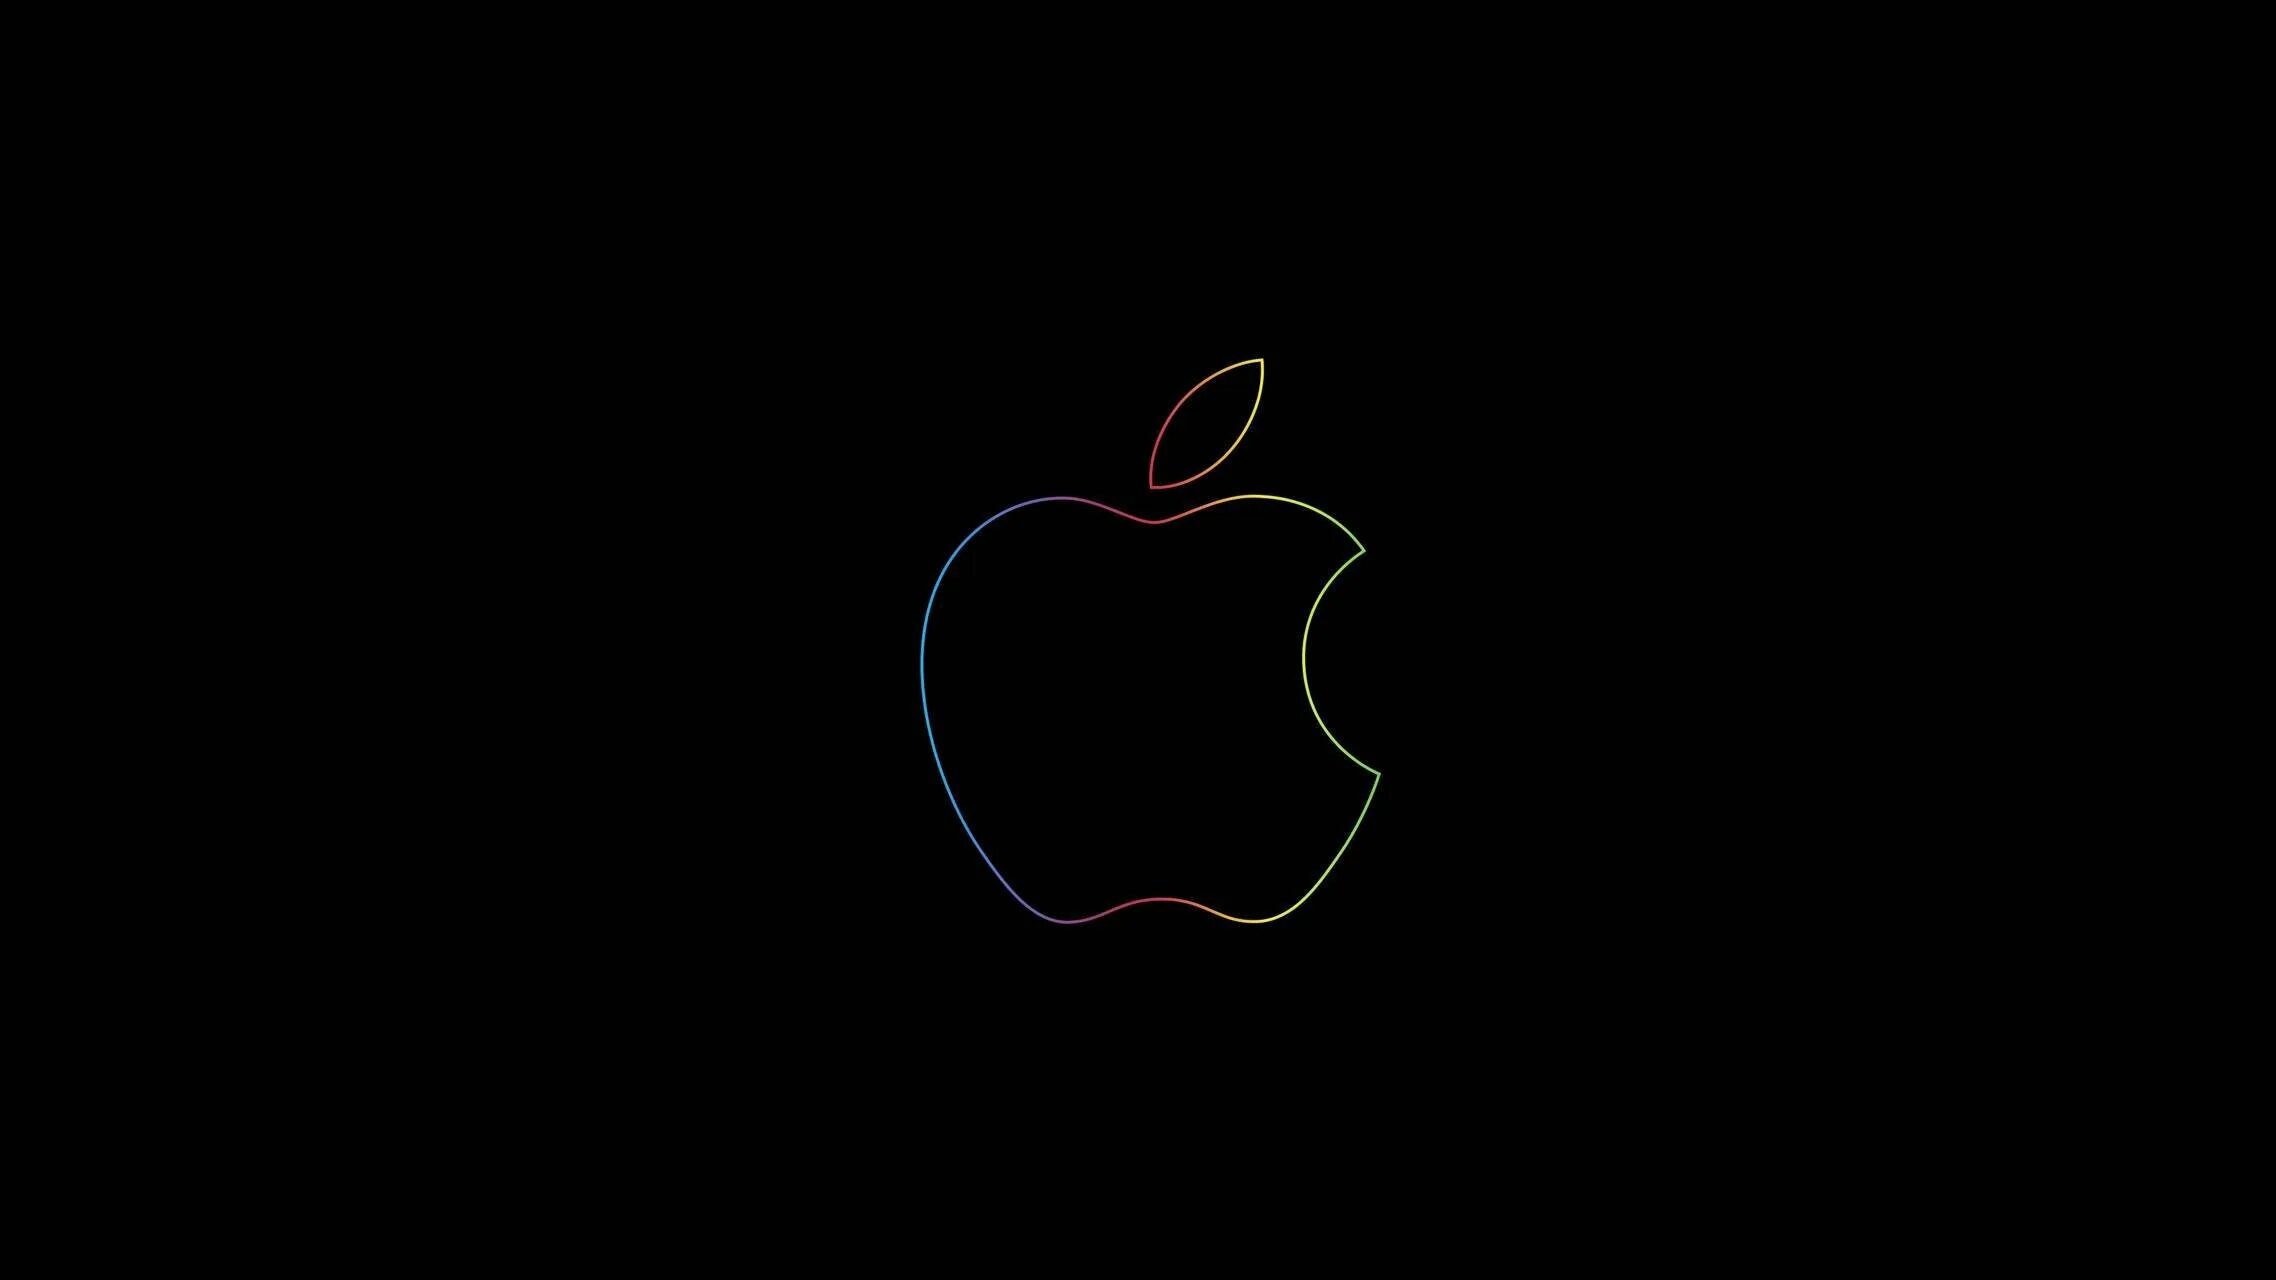 Черная заставка обои. Логотип эпл 2022. Черные обои. Обои Apple. Обои на рабочий стол черные.